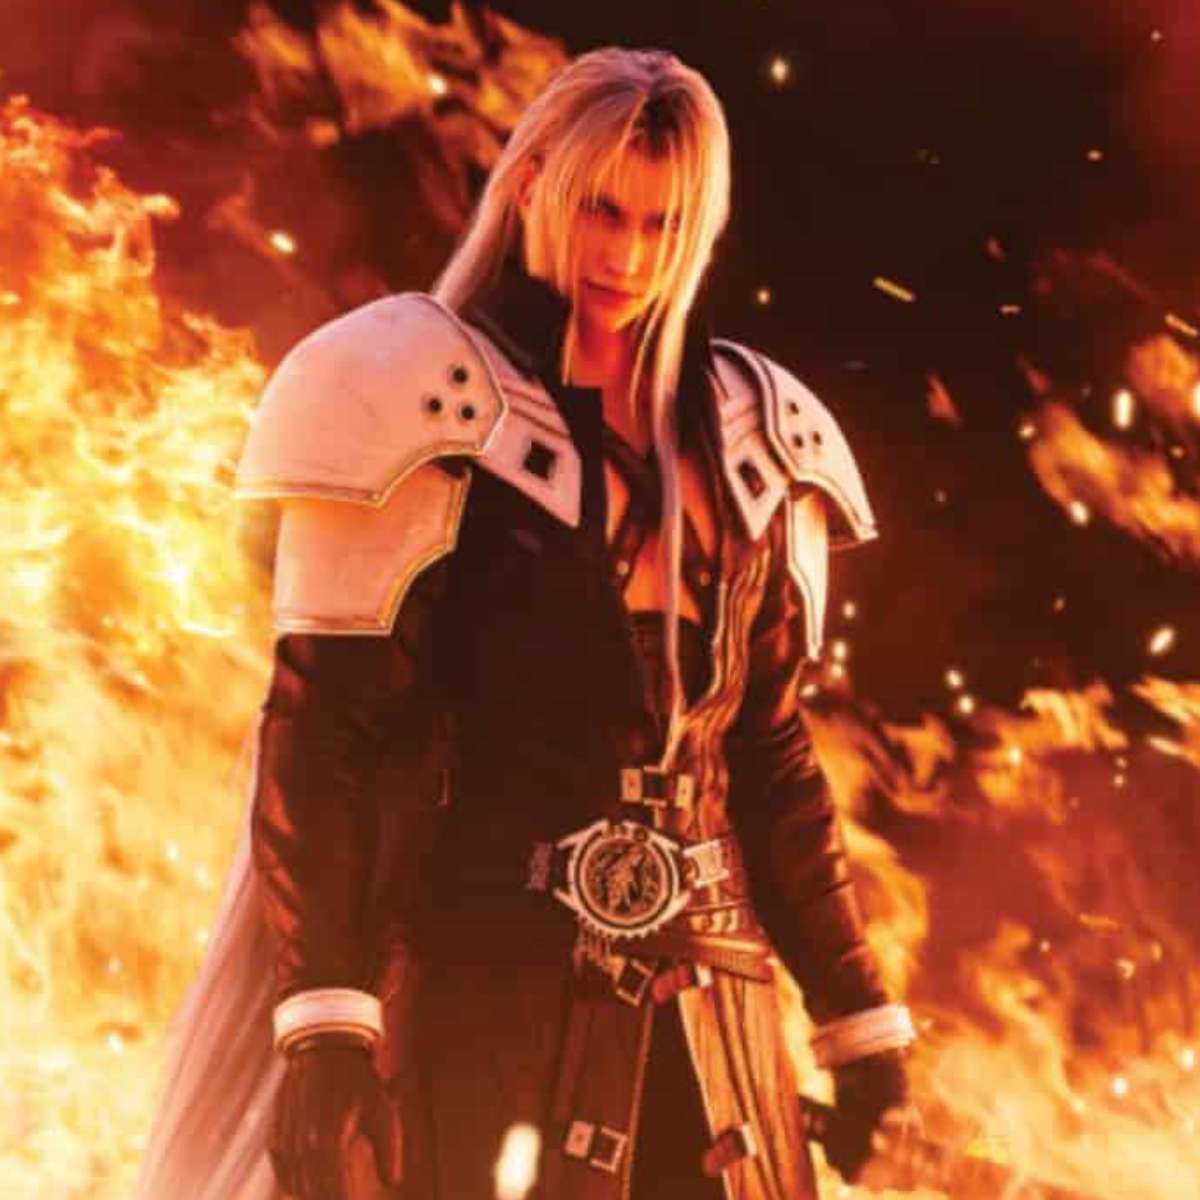 Por que Final Fantasy VII é o jogo mais popular da franquia?